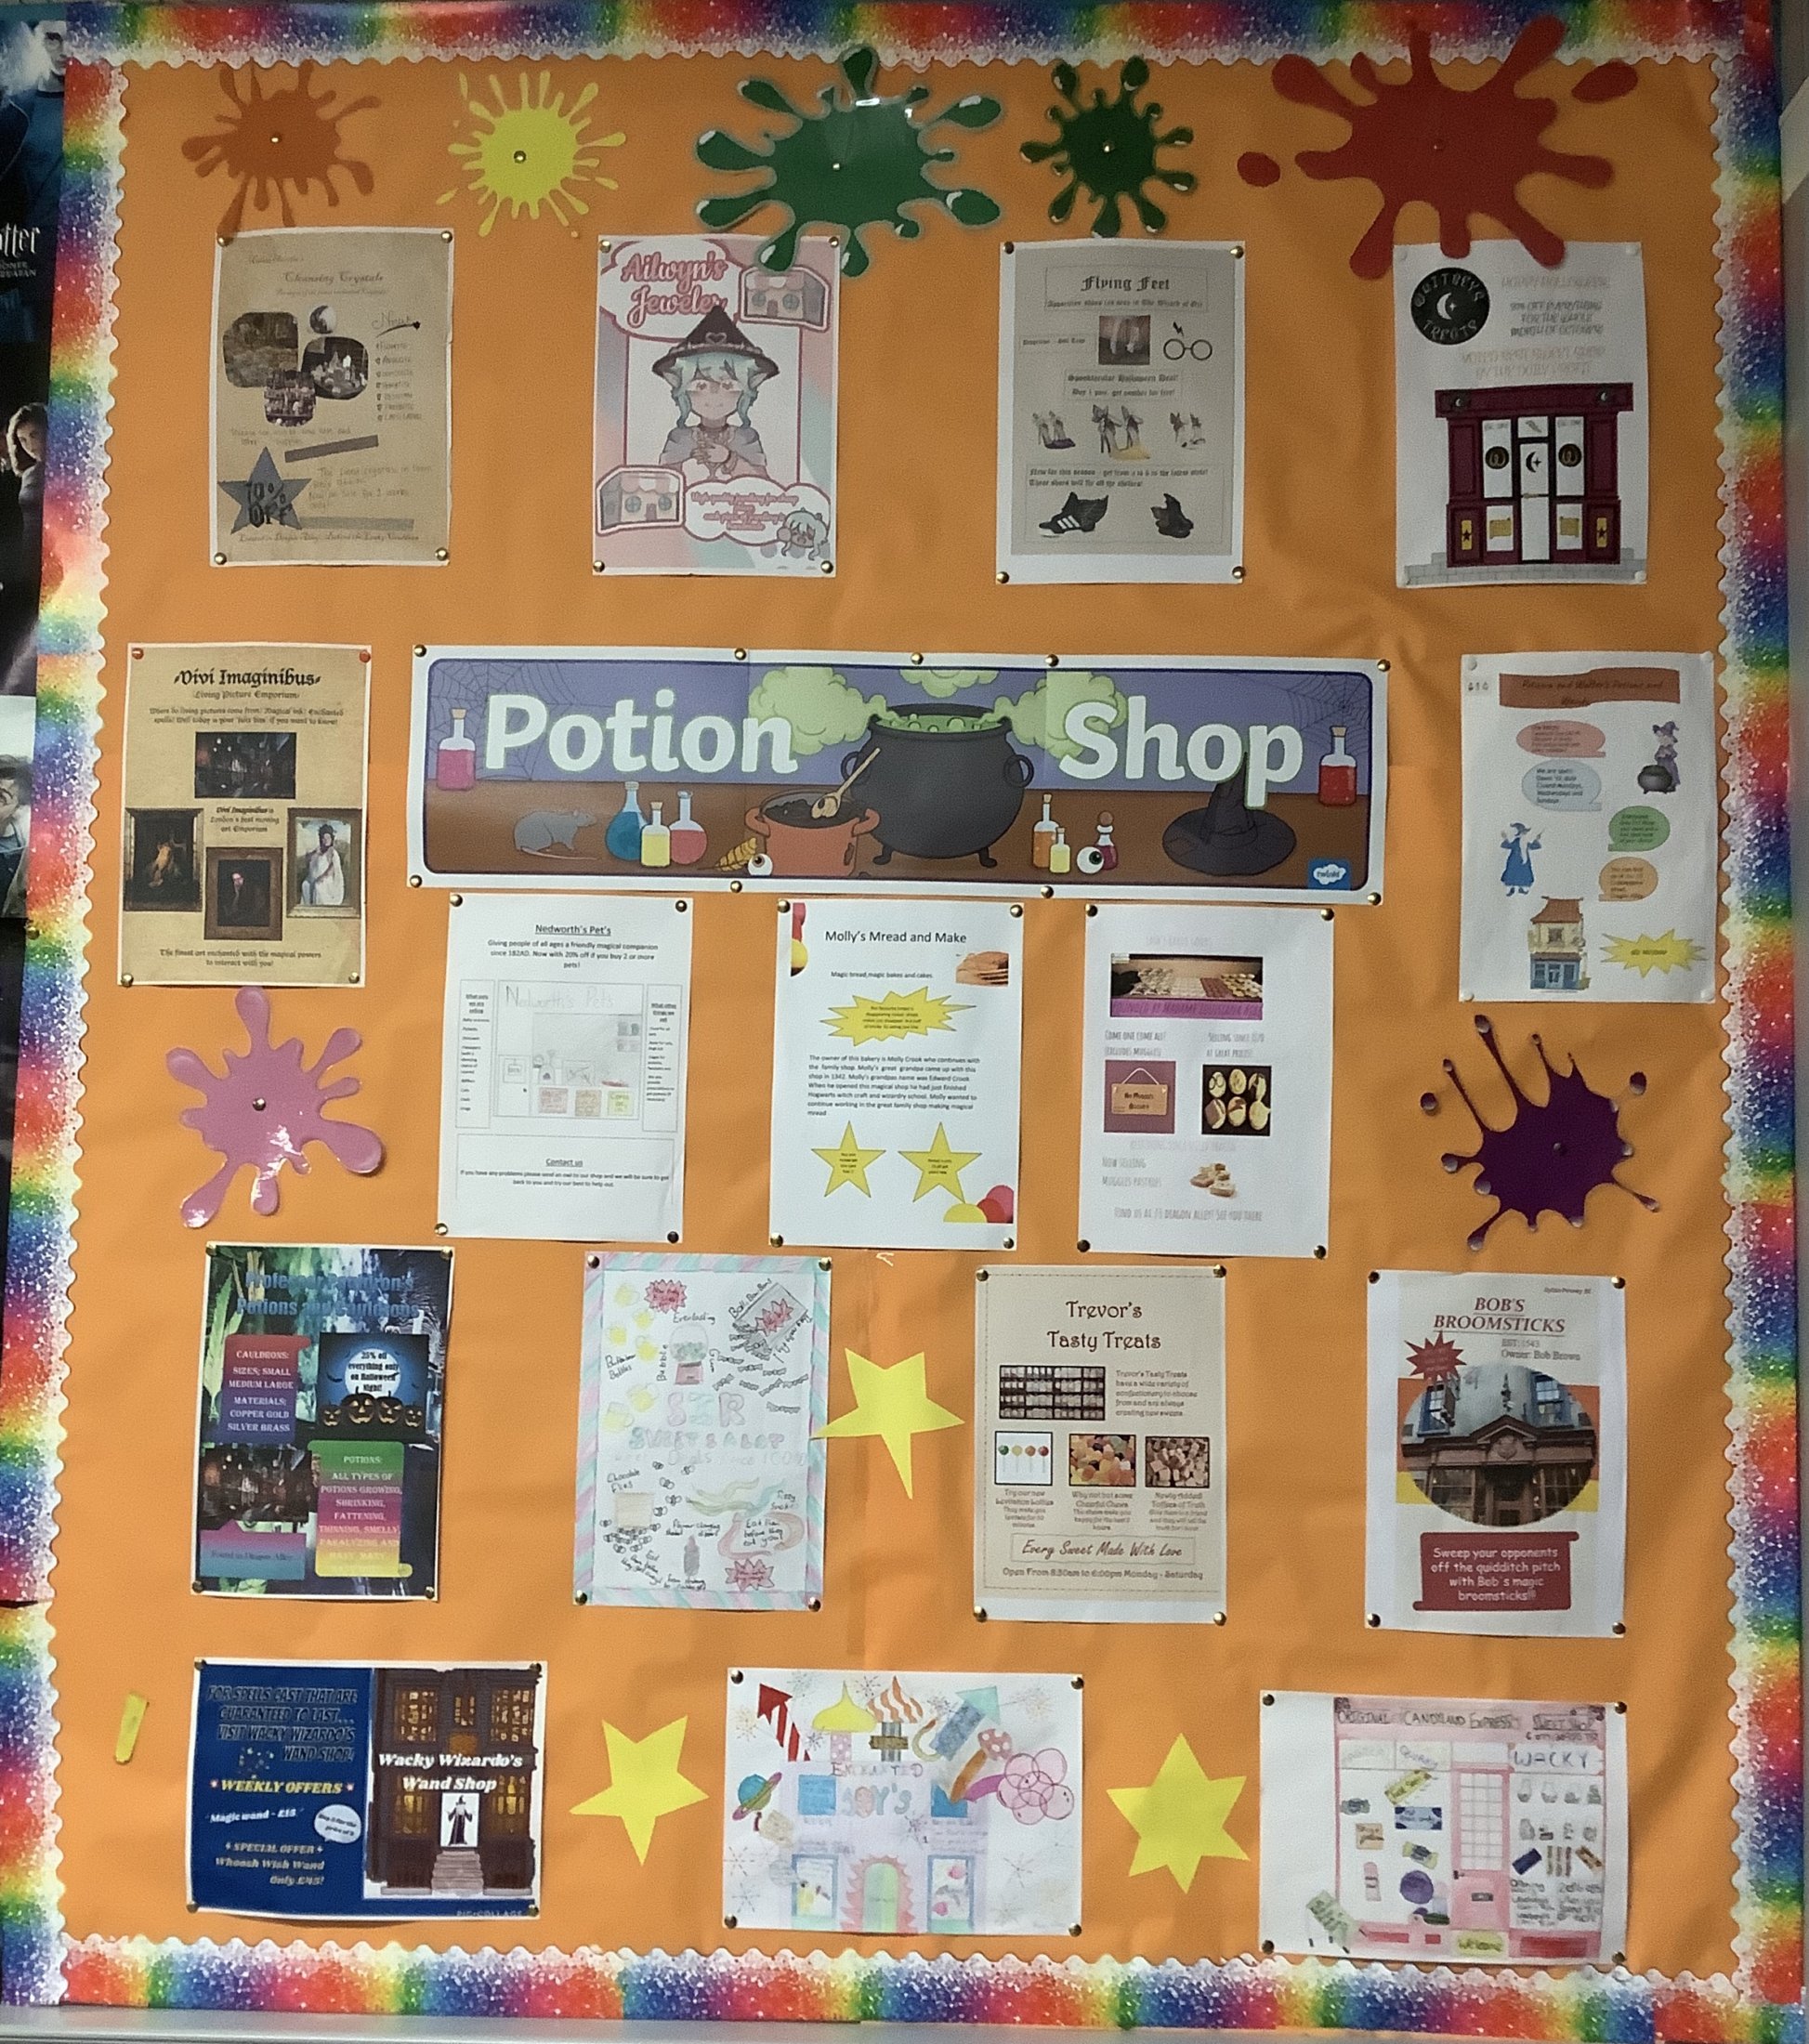 Potion Shop Posters